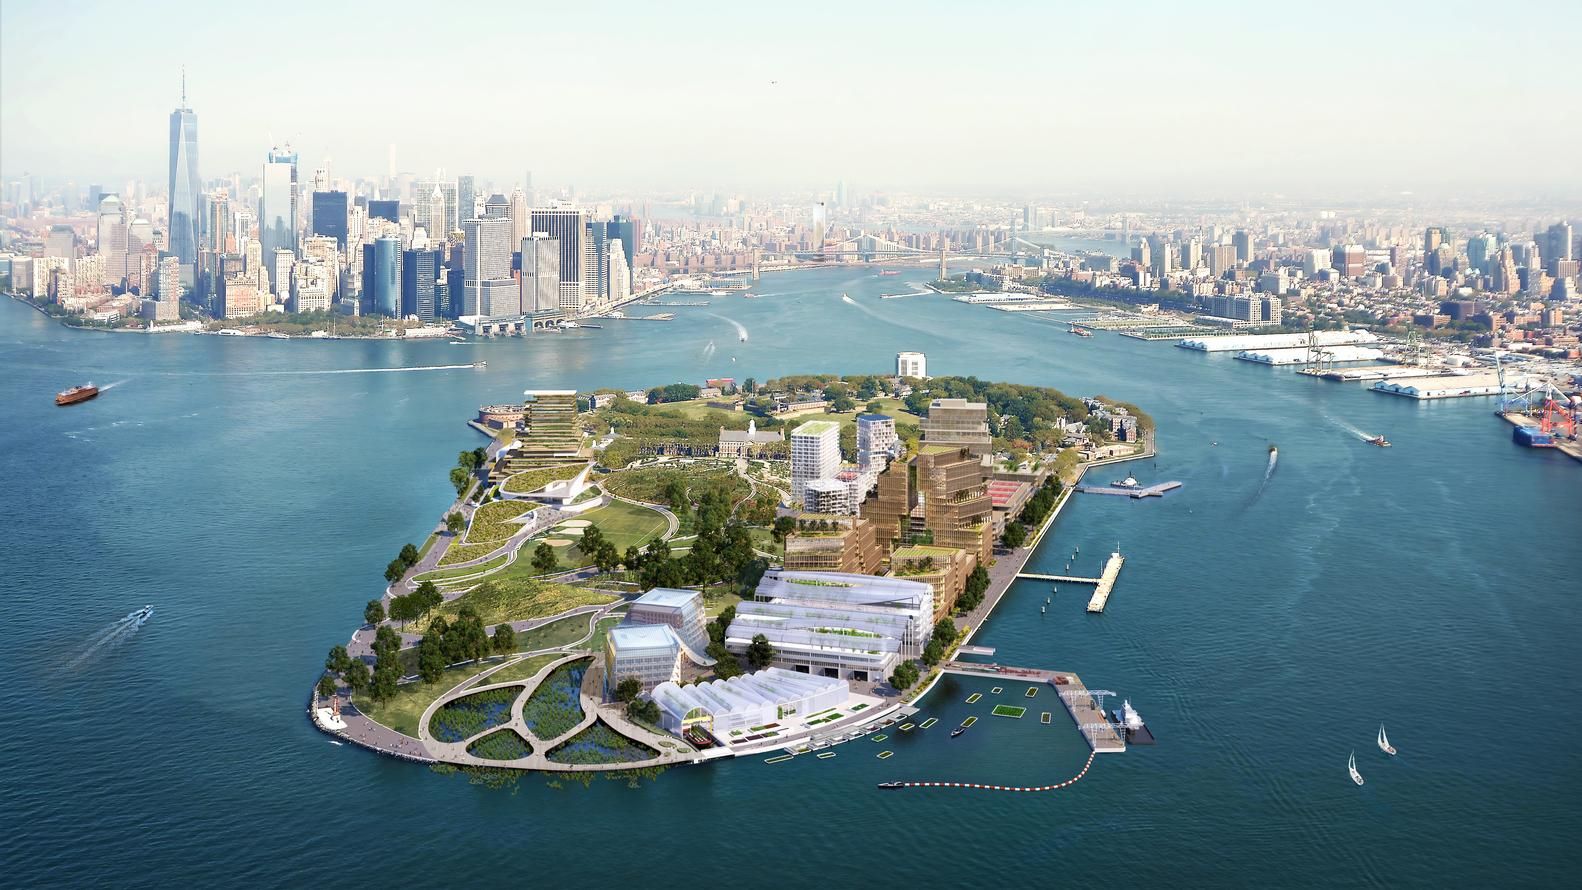 Реконструкция Говернорс: у Нью-Йорка могут перестроить остров из-за изменений климата – фото